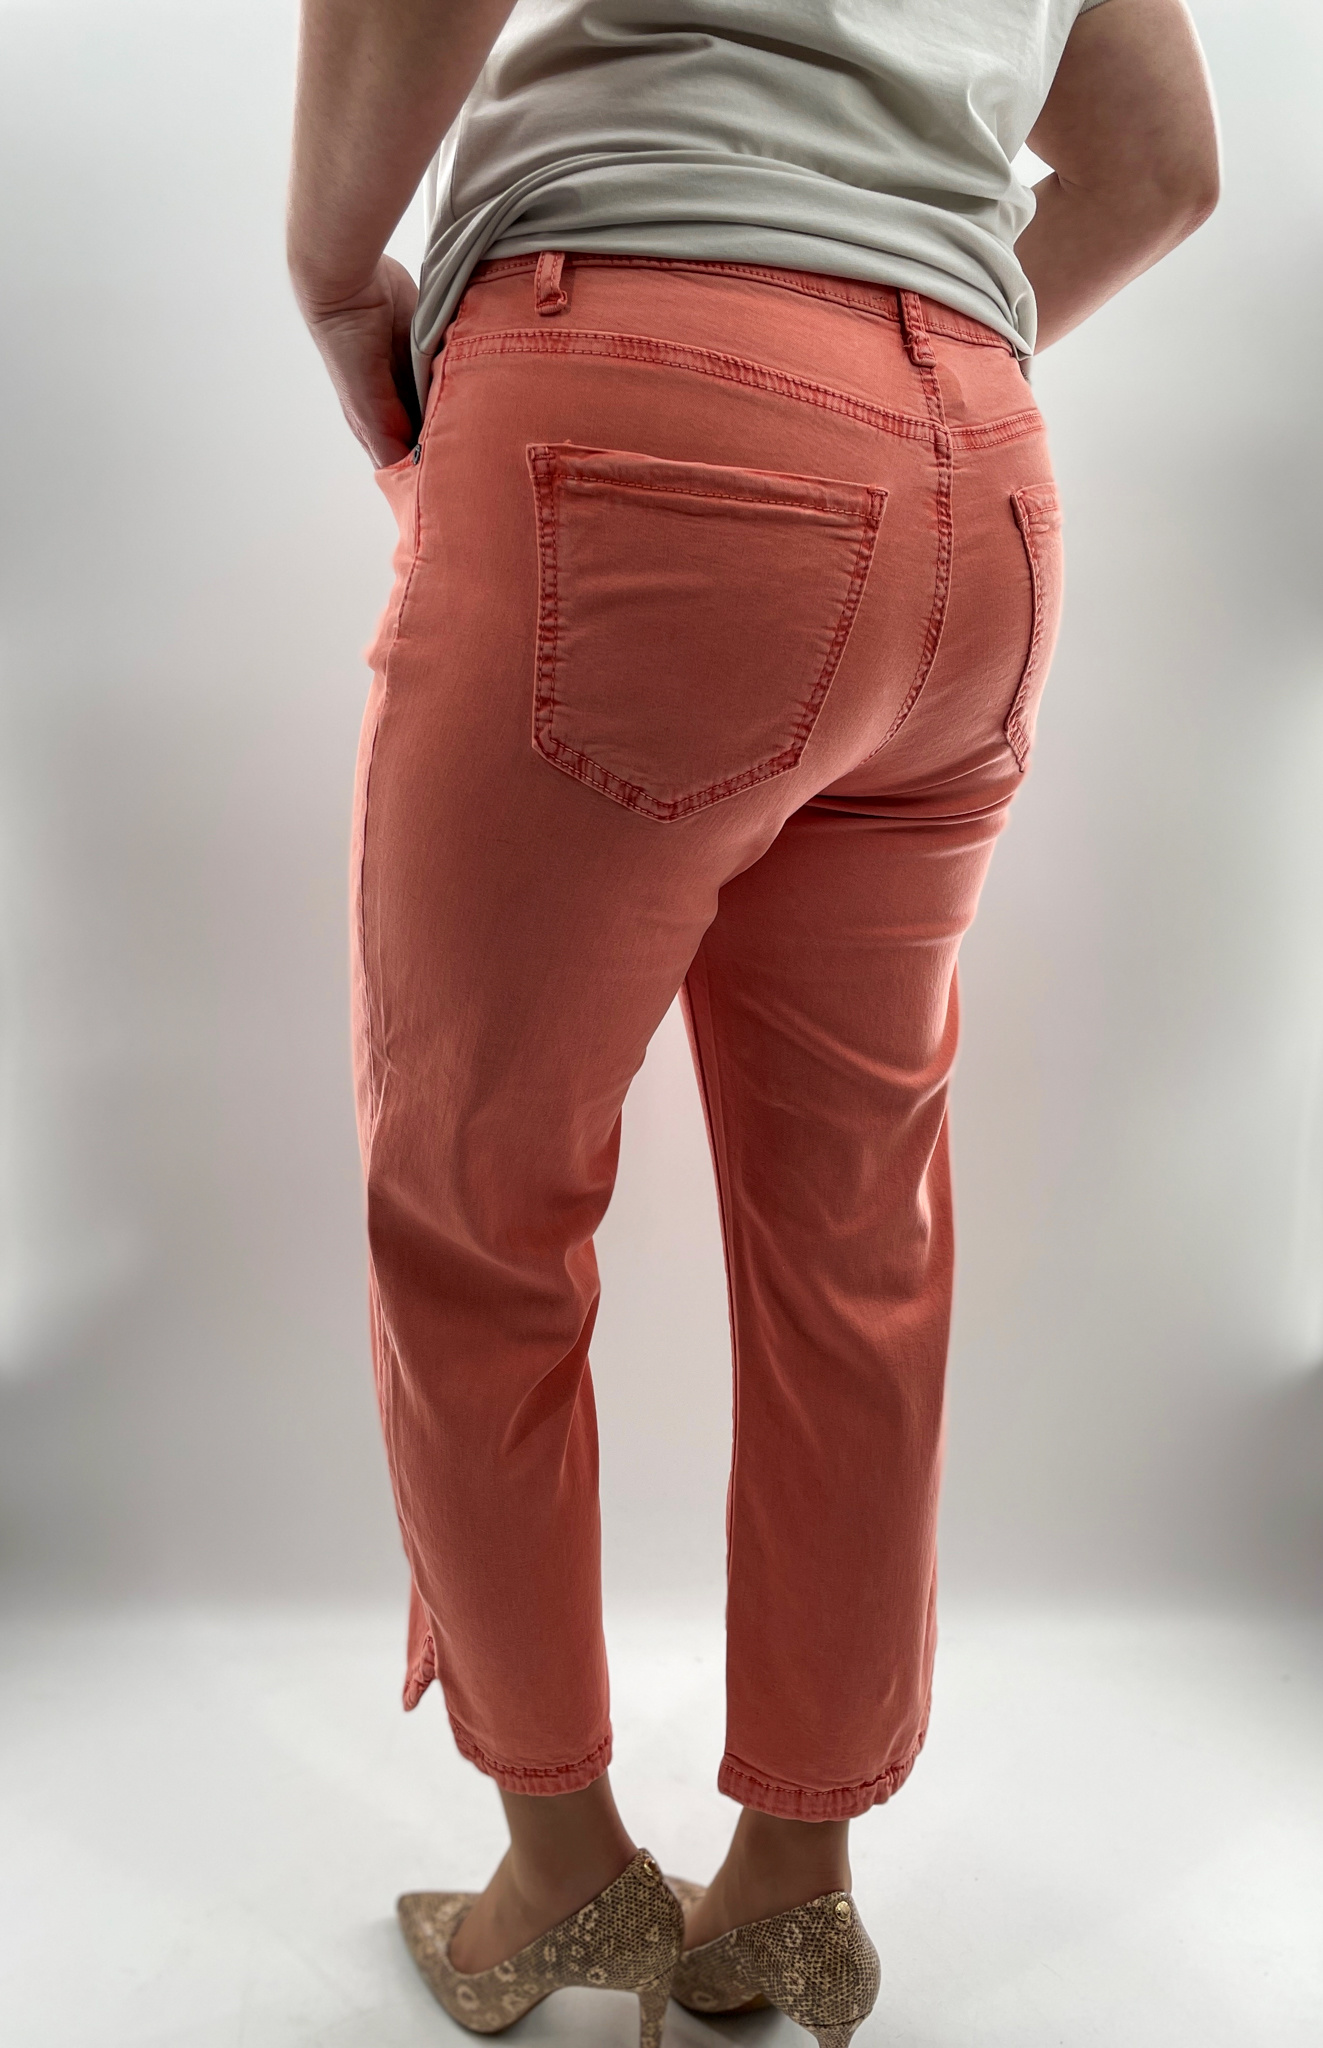 Capri Jeans Fente à l'ourlet Alison Sheri A39002 - Boutique